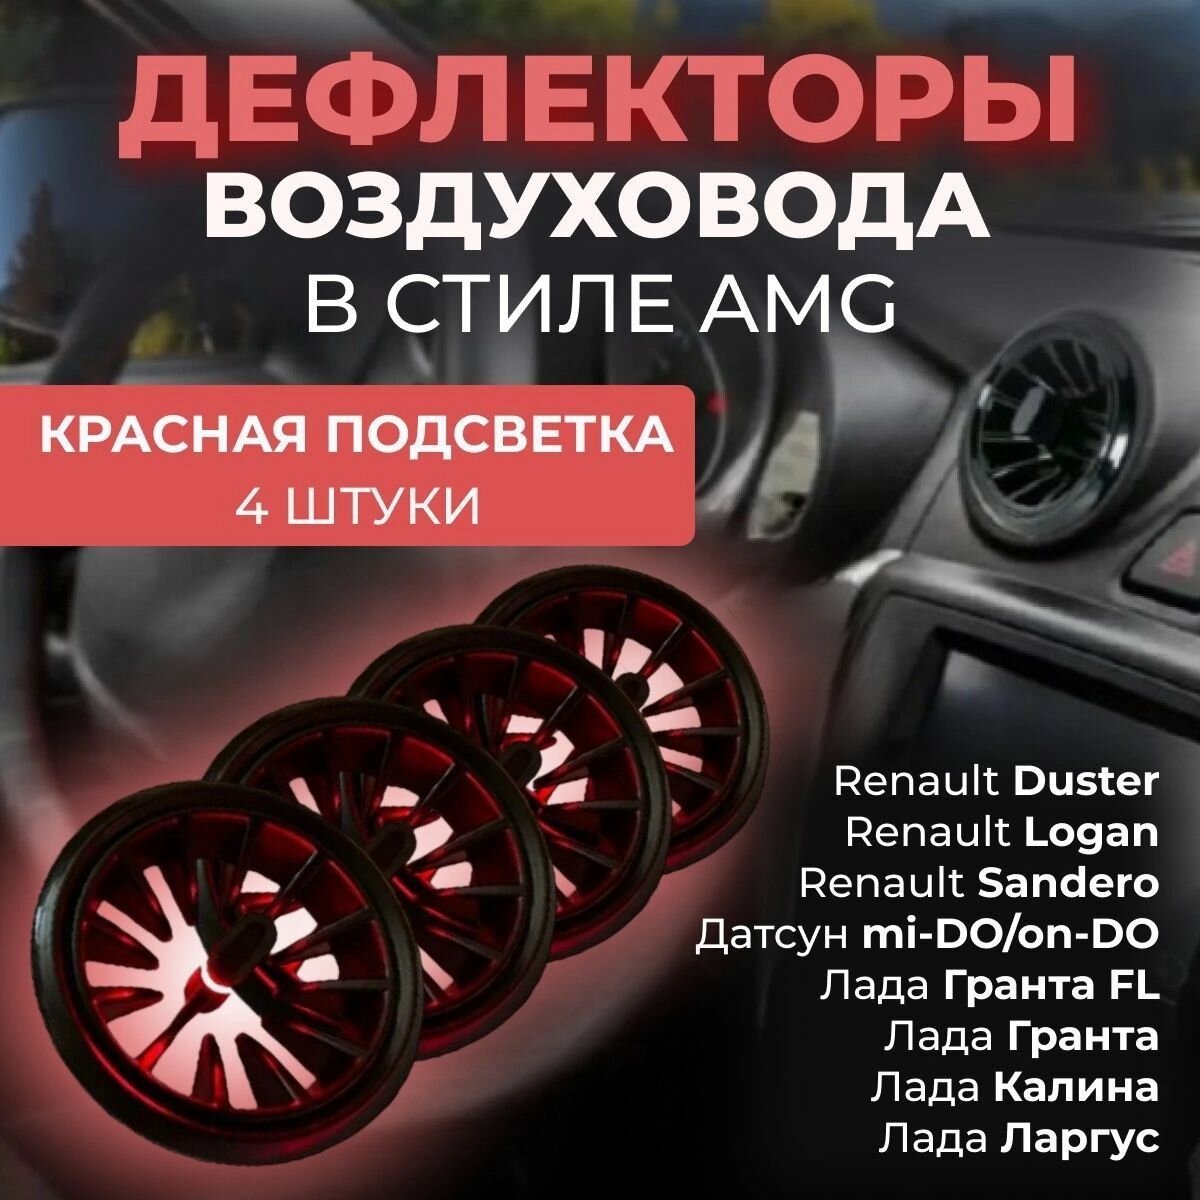 Автомобильный Дефлектор (сопла) воздуховода в стиле AMG (4 шт.) Красный цвет для для Гранта Калина 2 Датсун Дастер Ларгус Газель Бизнес Газель Некст